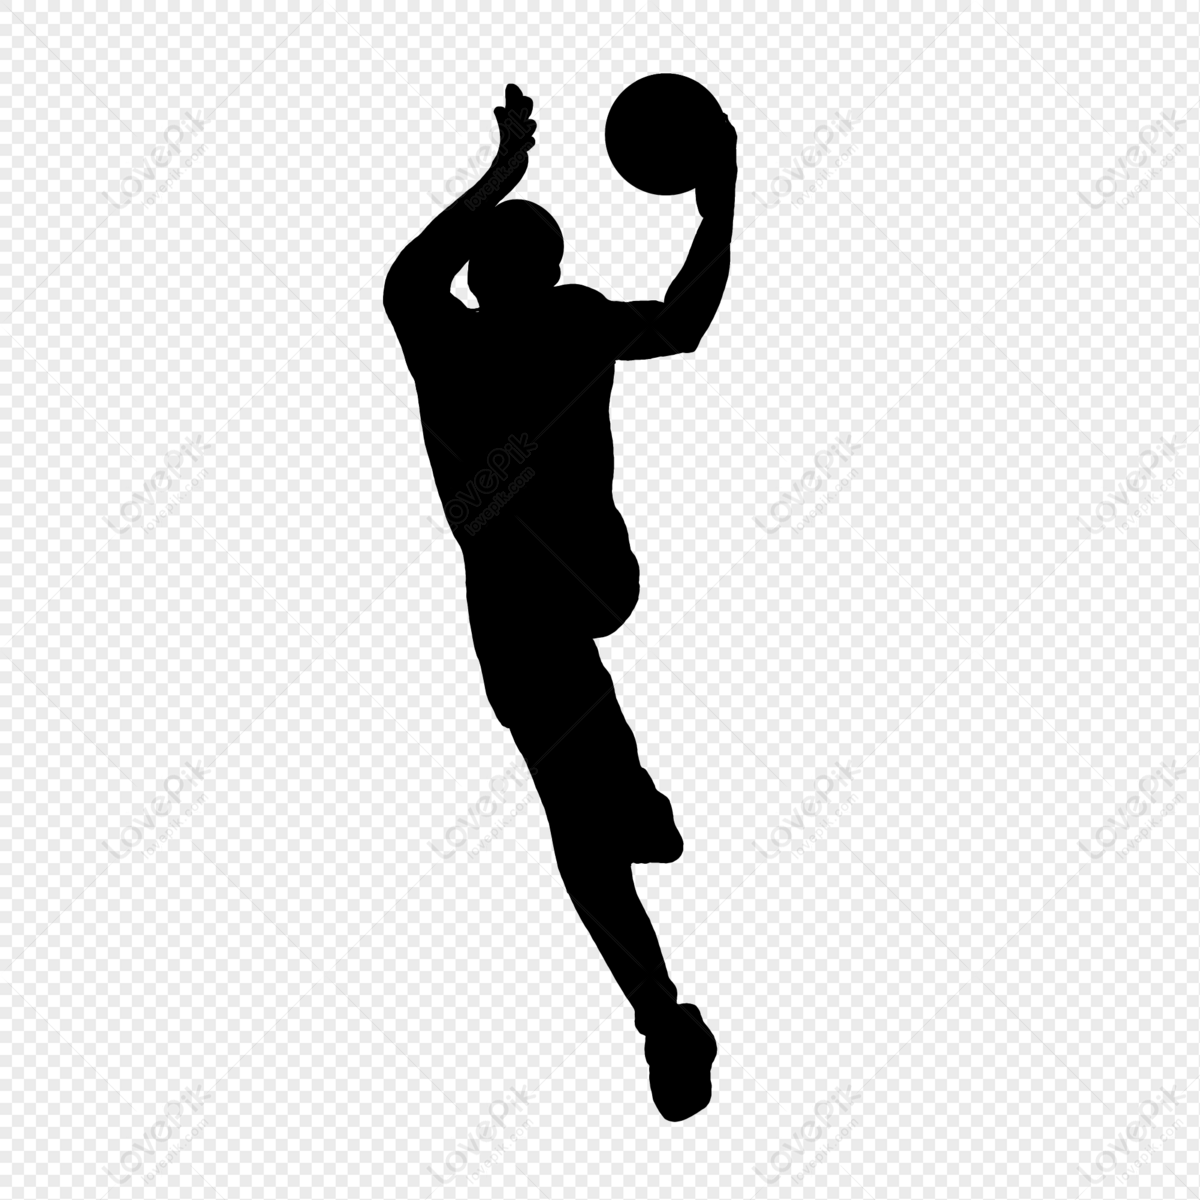 Basketball Dunk Silhouette, Basketball Player, Basketball, Black ...